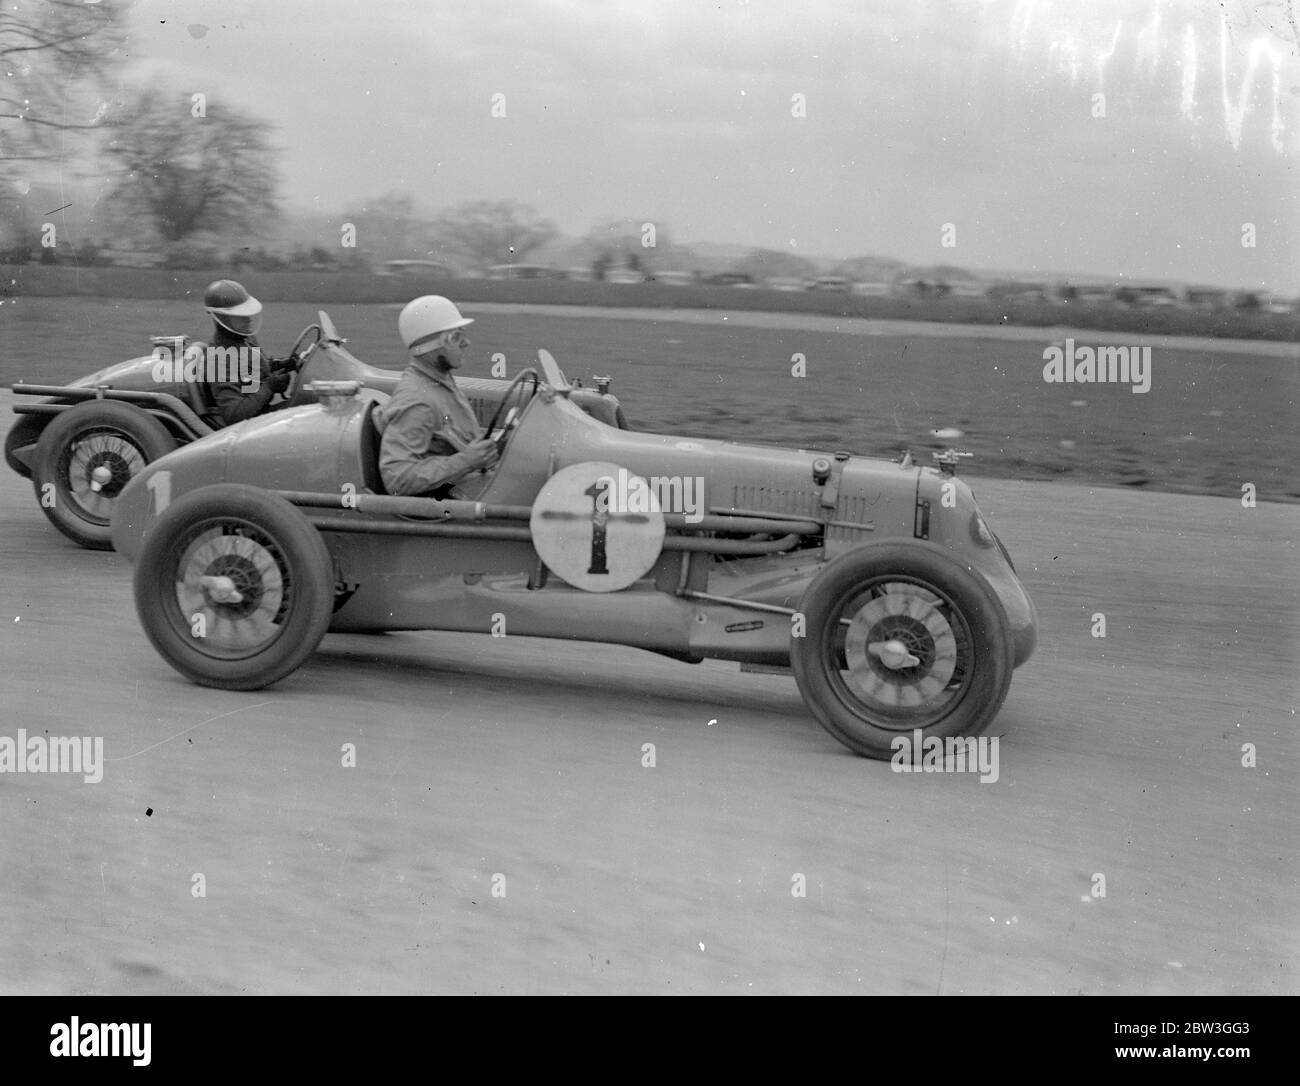 Seemann fahren einhändig, gewinnt British Empire Road Race. Fahren witout Erleichterung für die ganze 250 Meilen der Strecke, R J B Seaman (Maserati) gewann das British Empire Trophy Race, das erste große Autorennen der Saison in Donington Park, Derby. Er durchschnittlich 66.33 Meilen pro Stunde. P S Fairfield (E F A) war Zweiter und W C Everitt (Alfa Romeo) wurde Dritter. 27 der besten Fahrer Großbritanniens traten an der Veranstaltung an. Foto zeigt, I F Connellun, M G Midget und Al Esel (connera). April 1936 Stockfoto